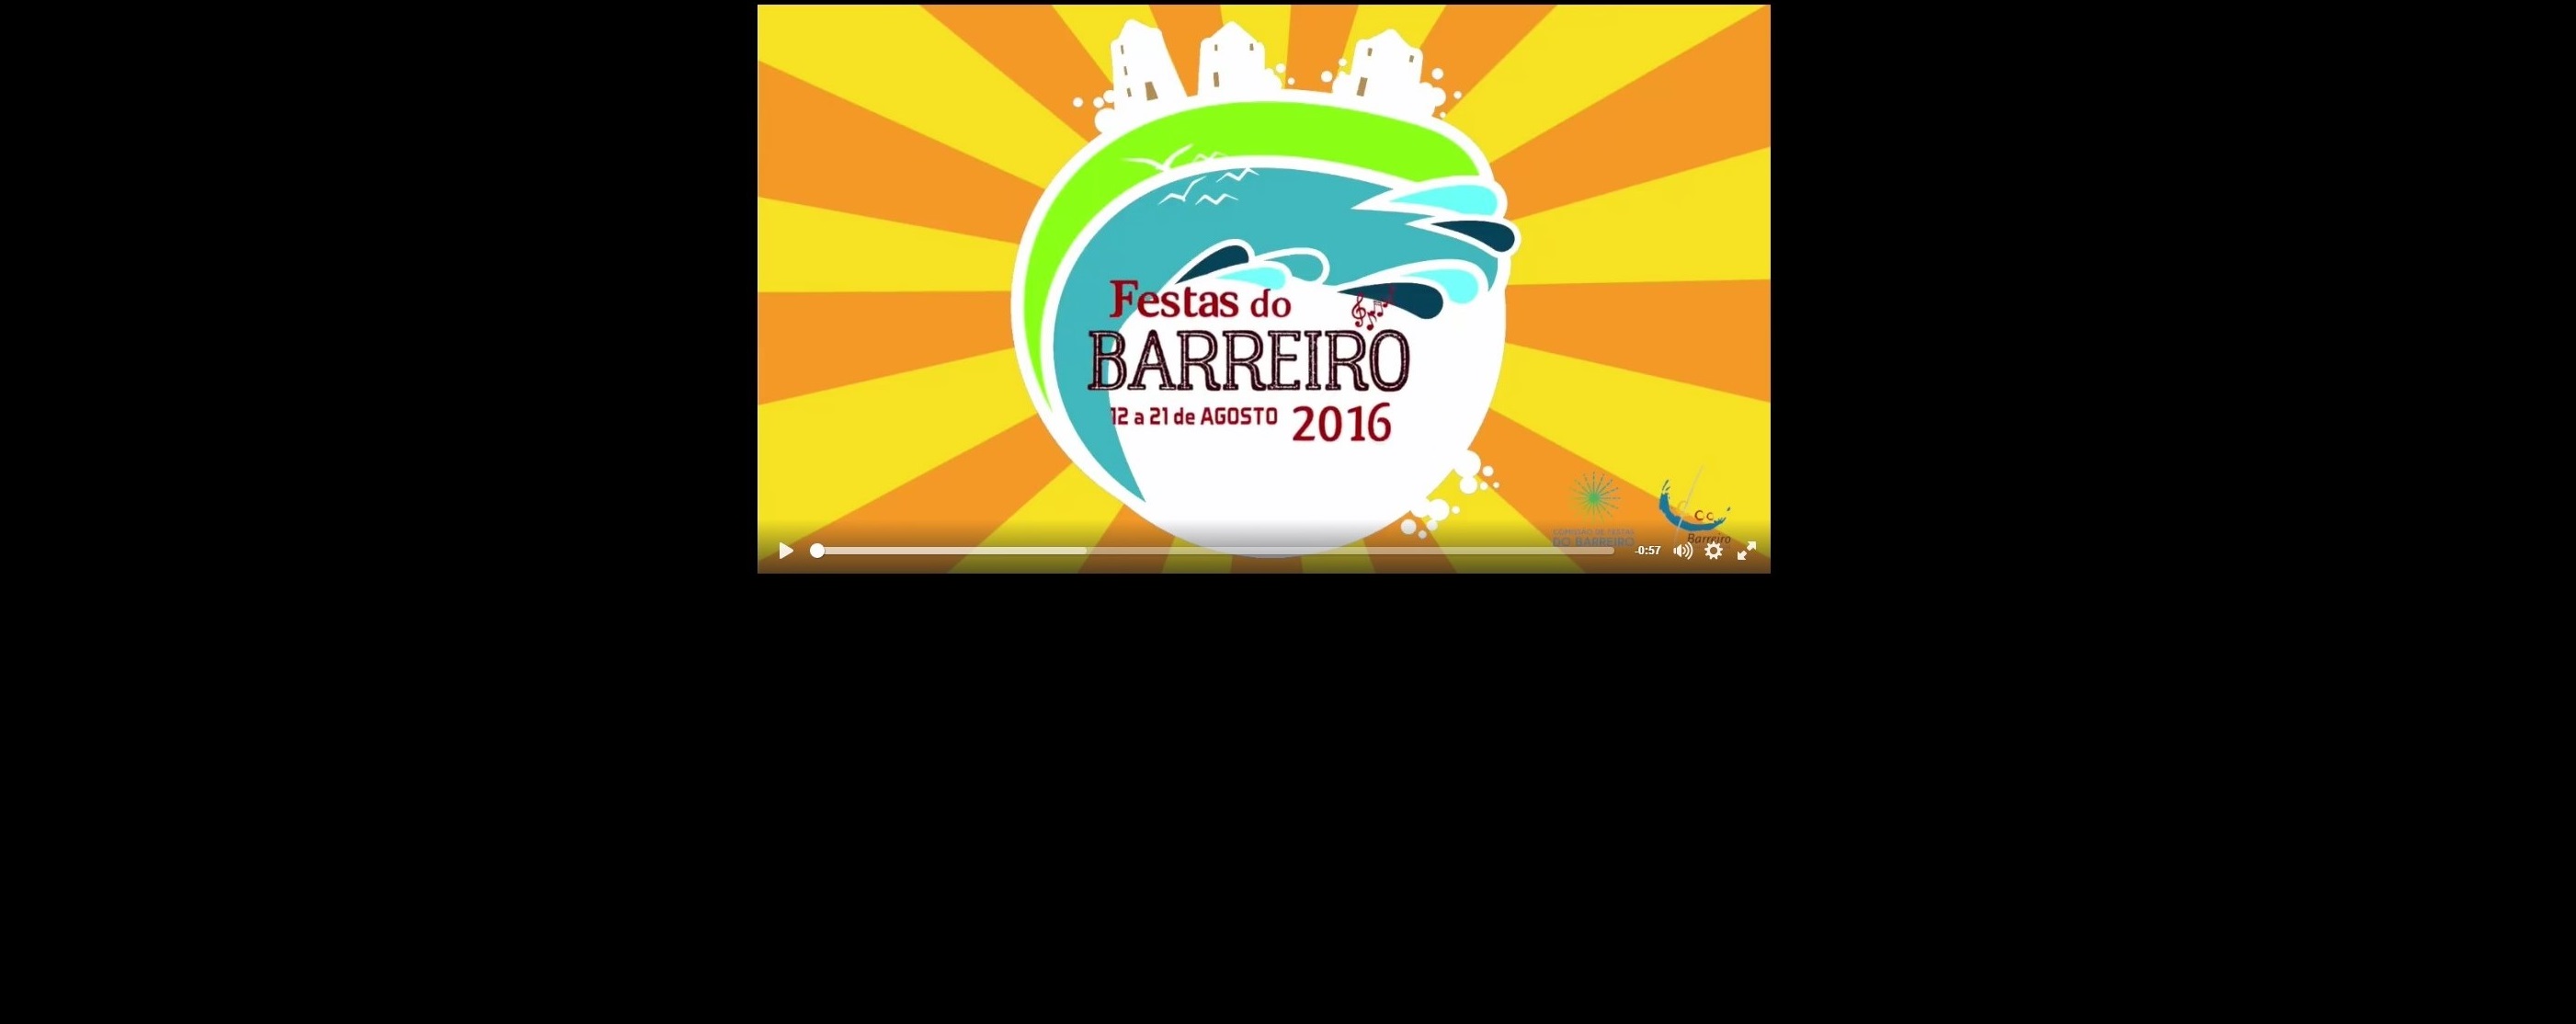 Festas do Barreiro | 12 a 21 de agosto | Spot promocional